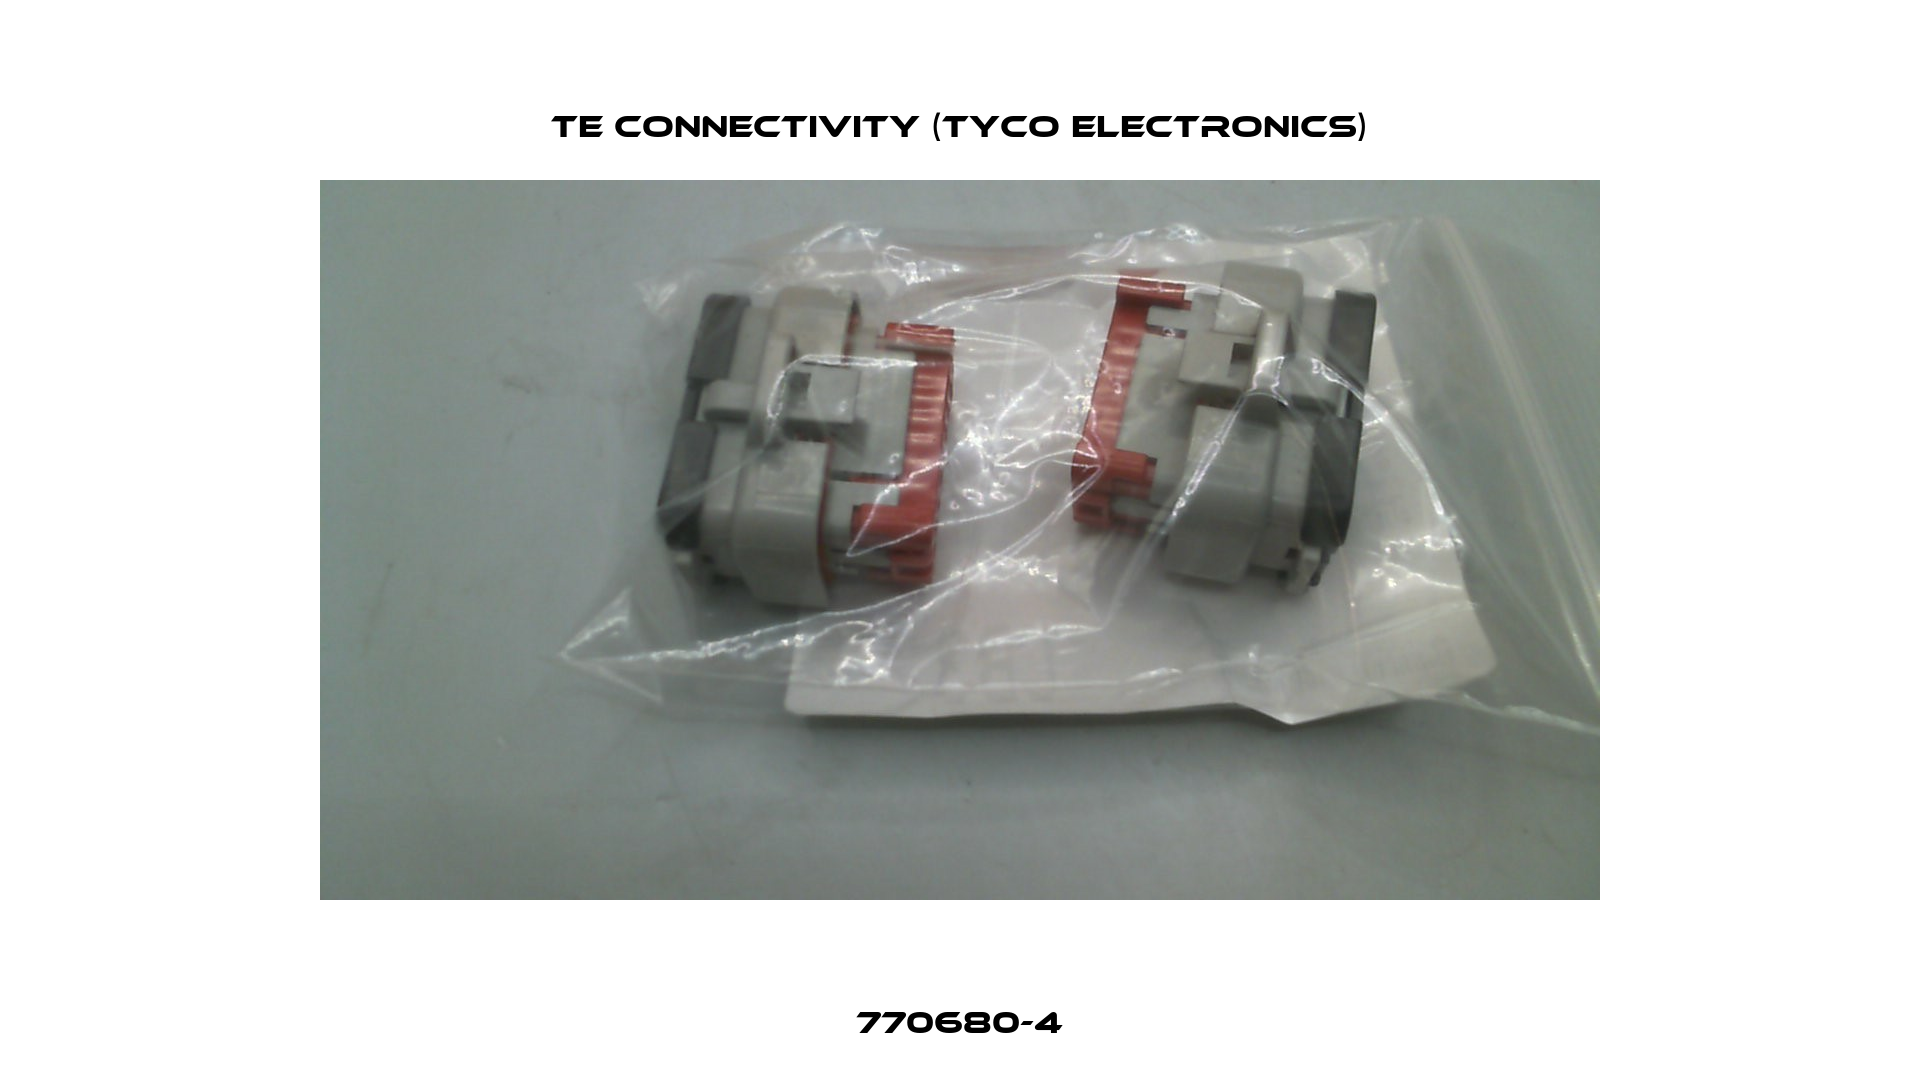 770680-4 TE Connectivity (Tyco Electronics)